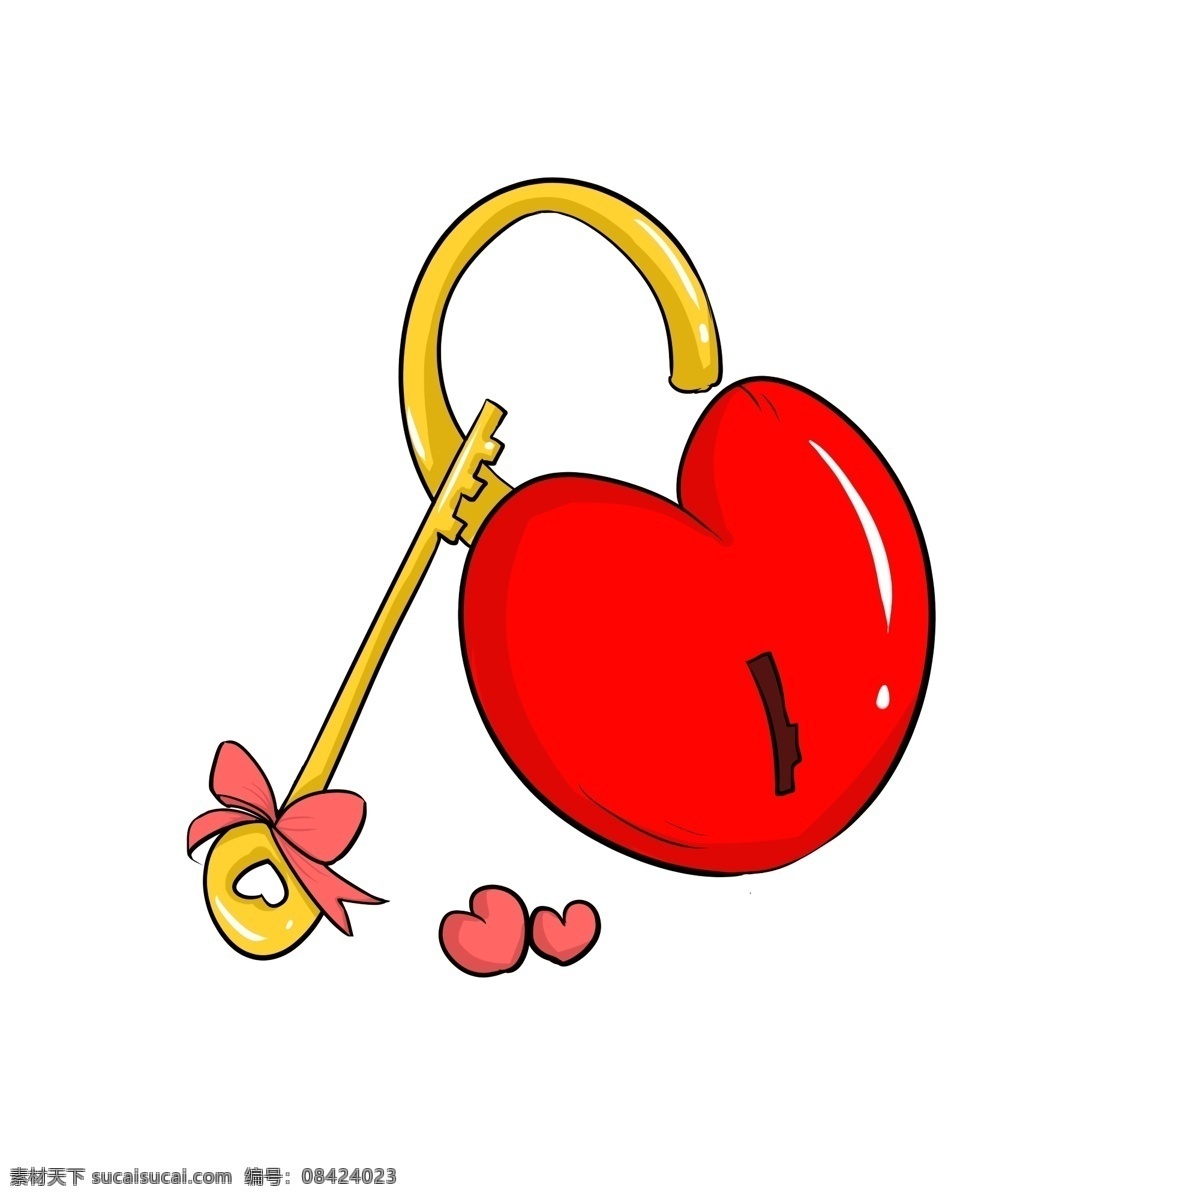 手绘 爱情 钥匙 插画 手绘爱情插画 创意爱情插画 美满的爱情 幸福的爱情 甜美的爱情 锁